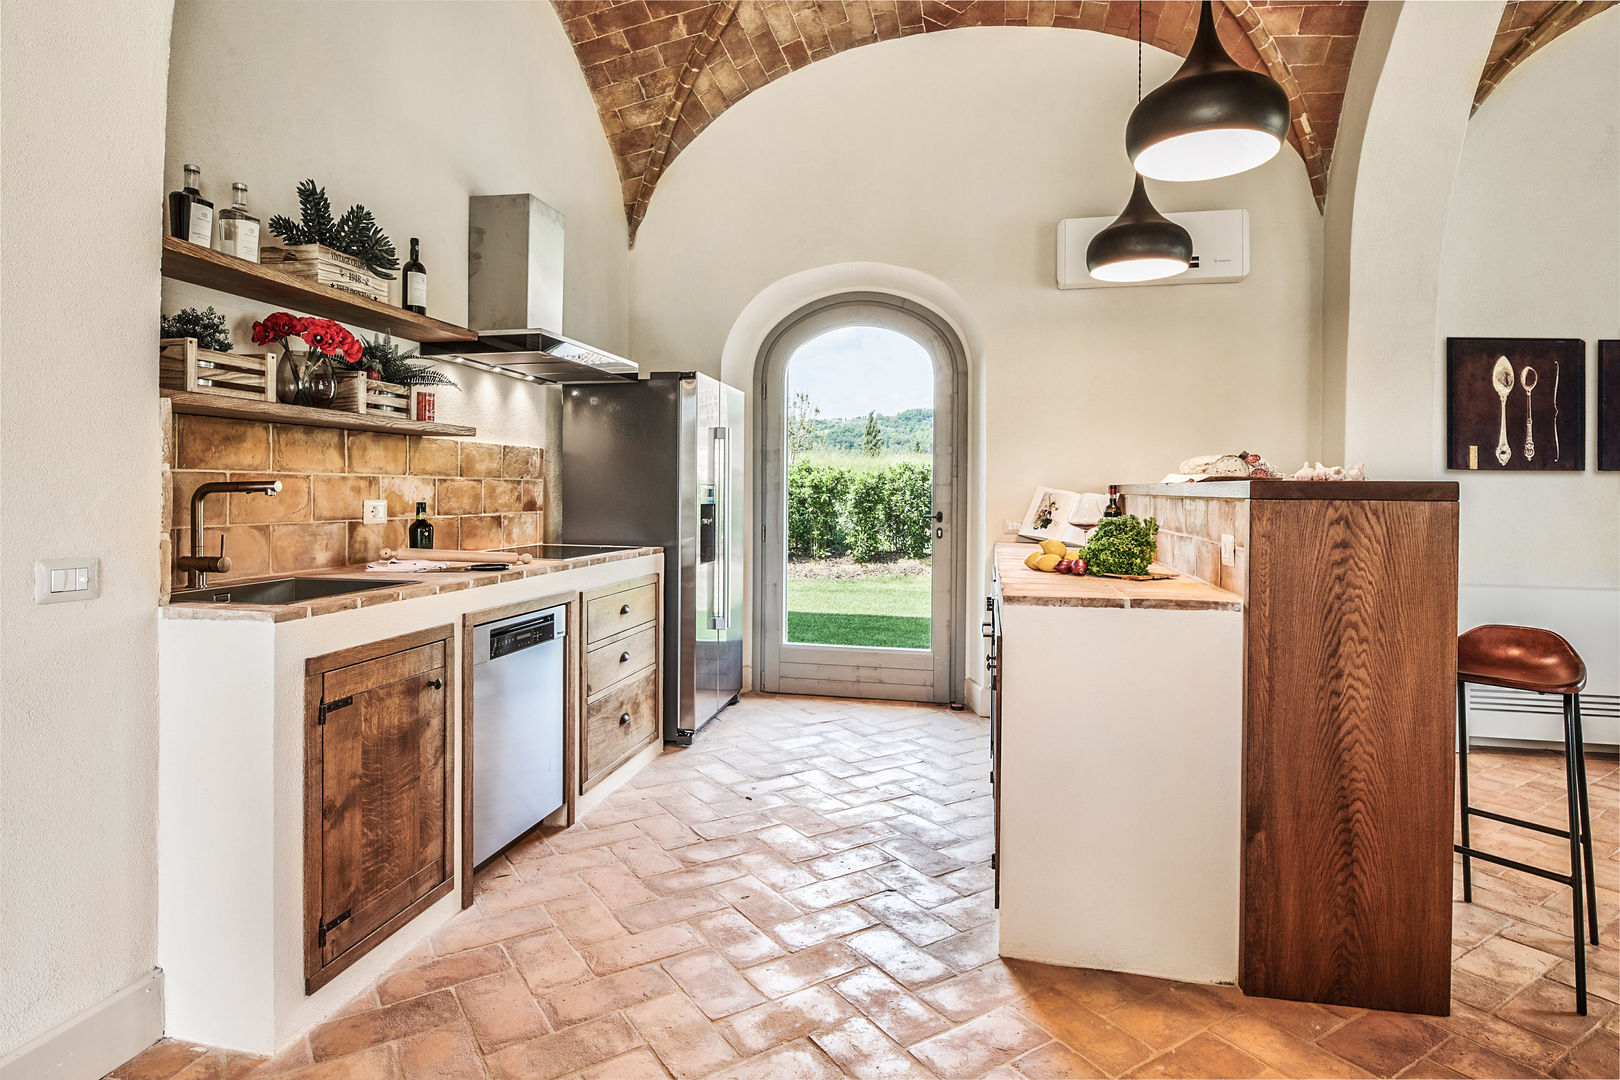 Piano terra - cucina Arch. Alessandra Cipriani Cucina rurale cucina, legno, cotto, handmade